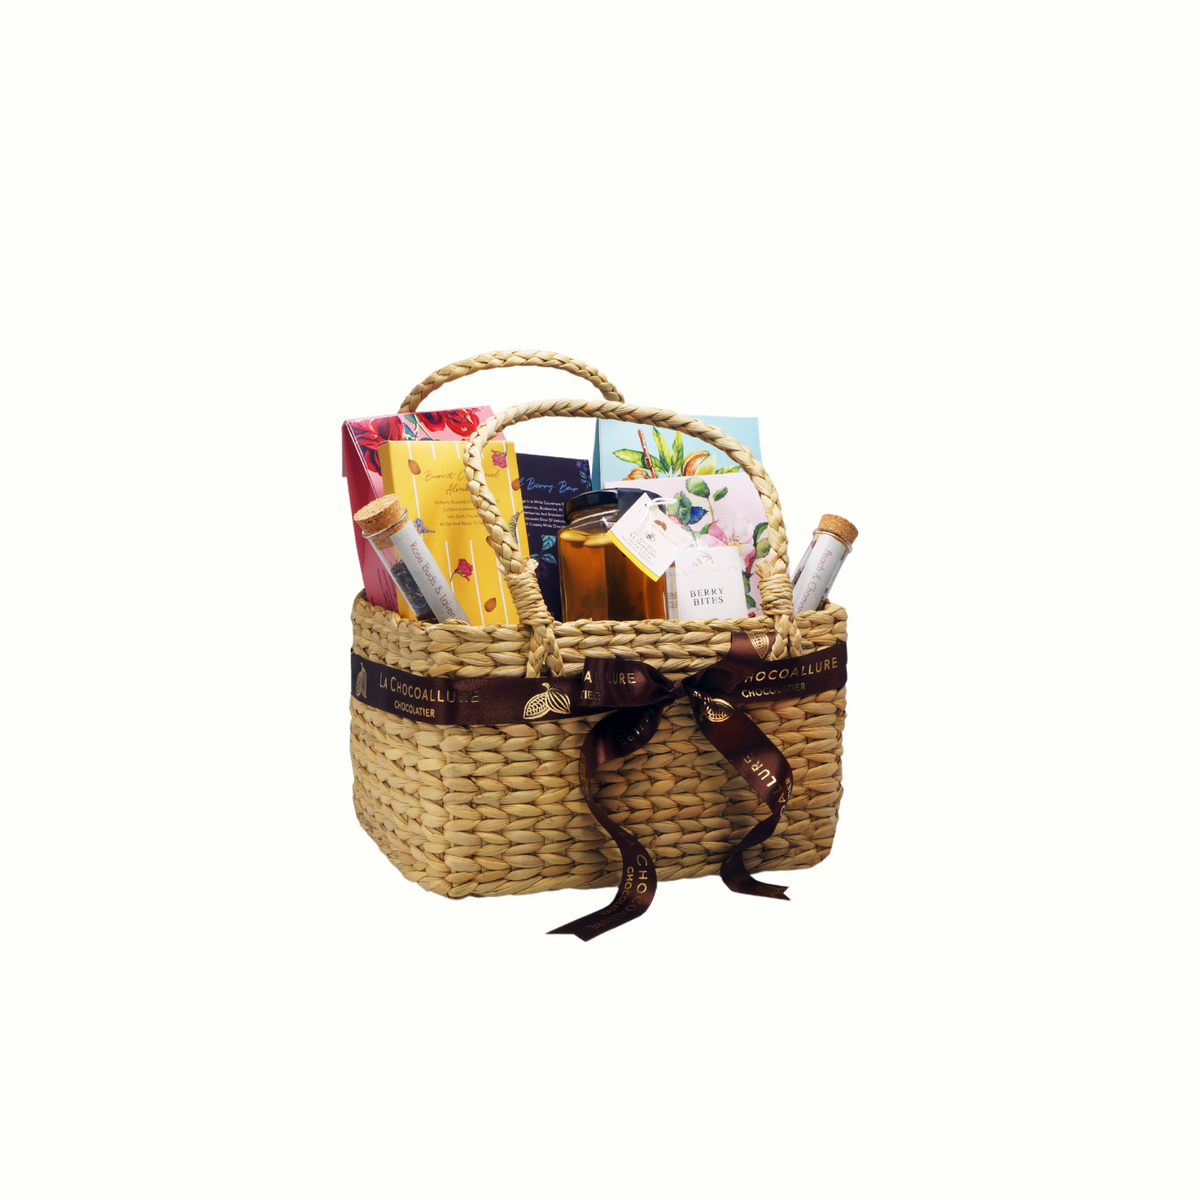 Get Together Gift Hamper Basket-1